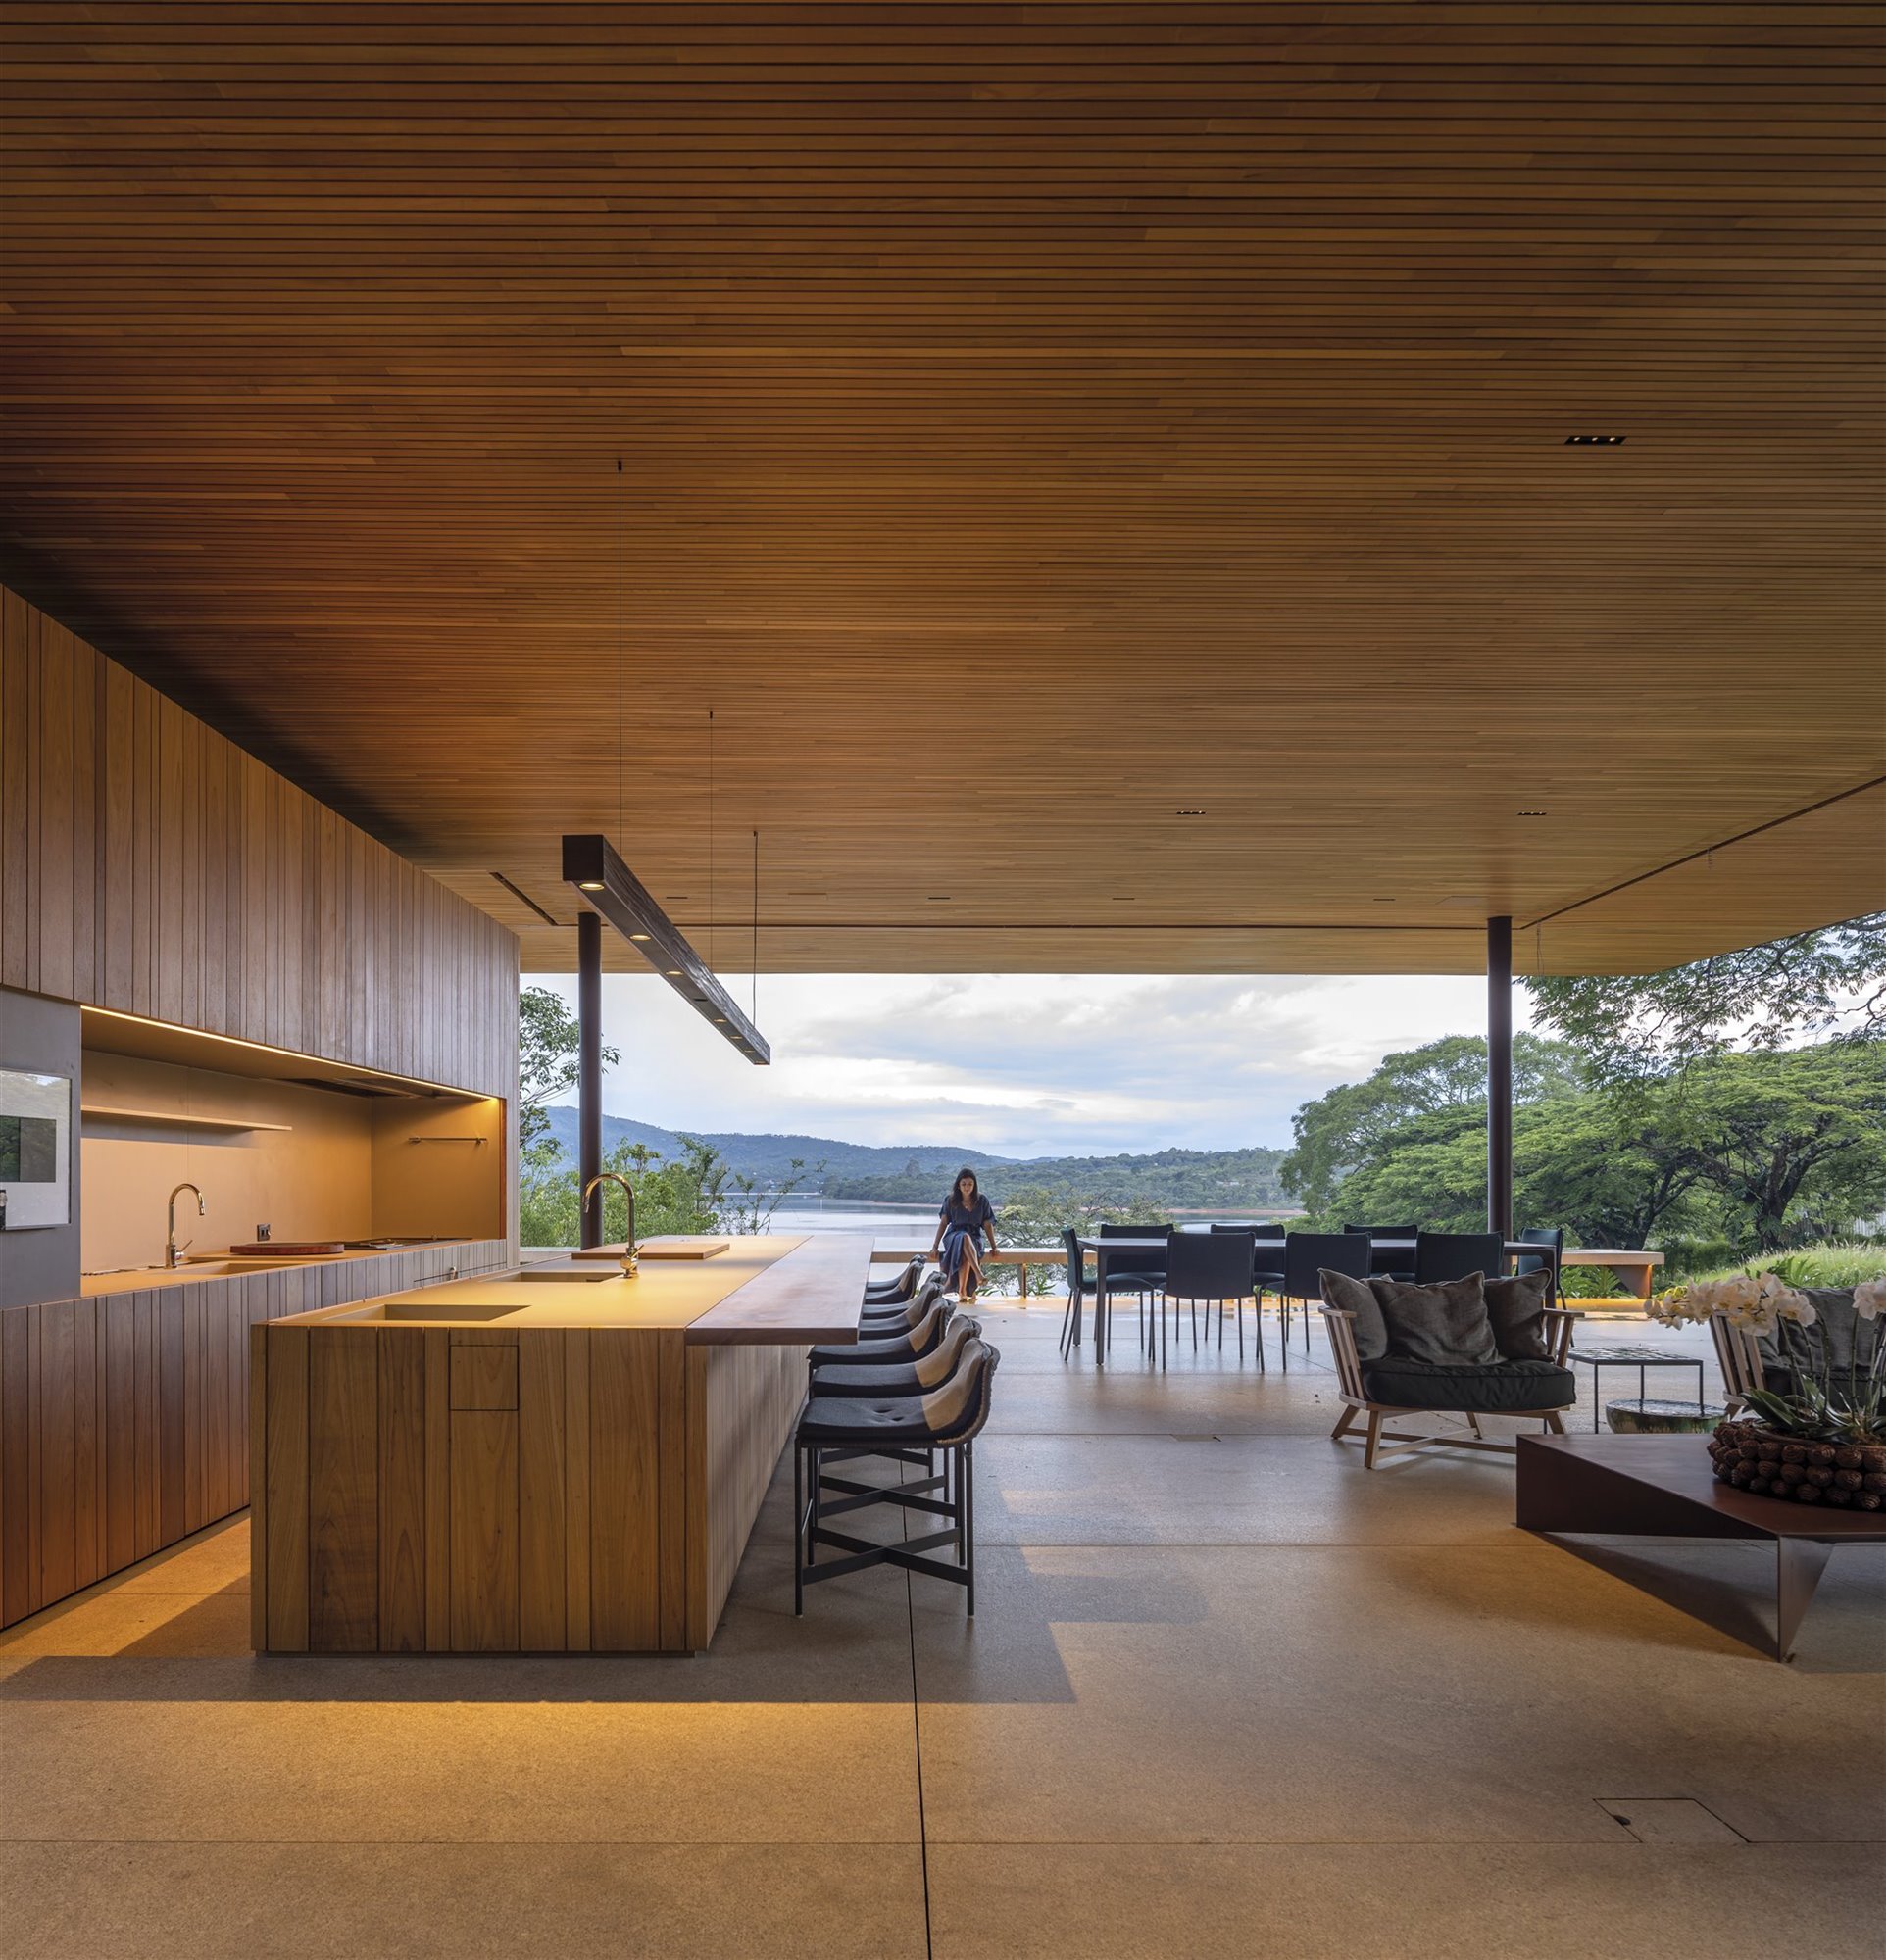 Casa moderna con patio interior en Brasil comedor salon